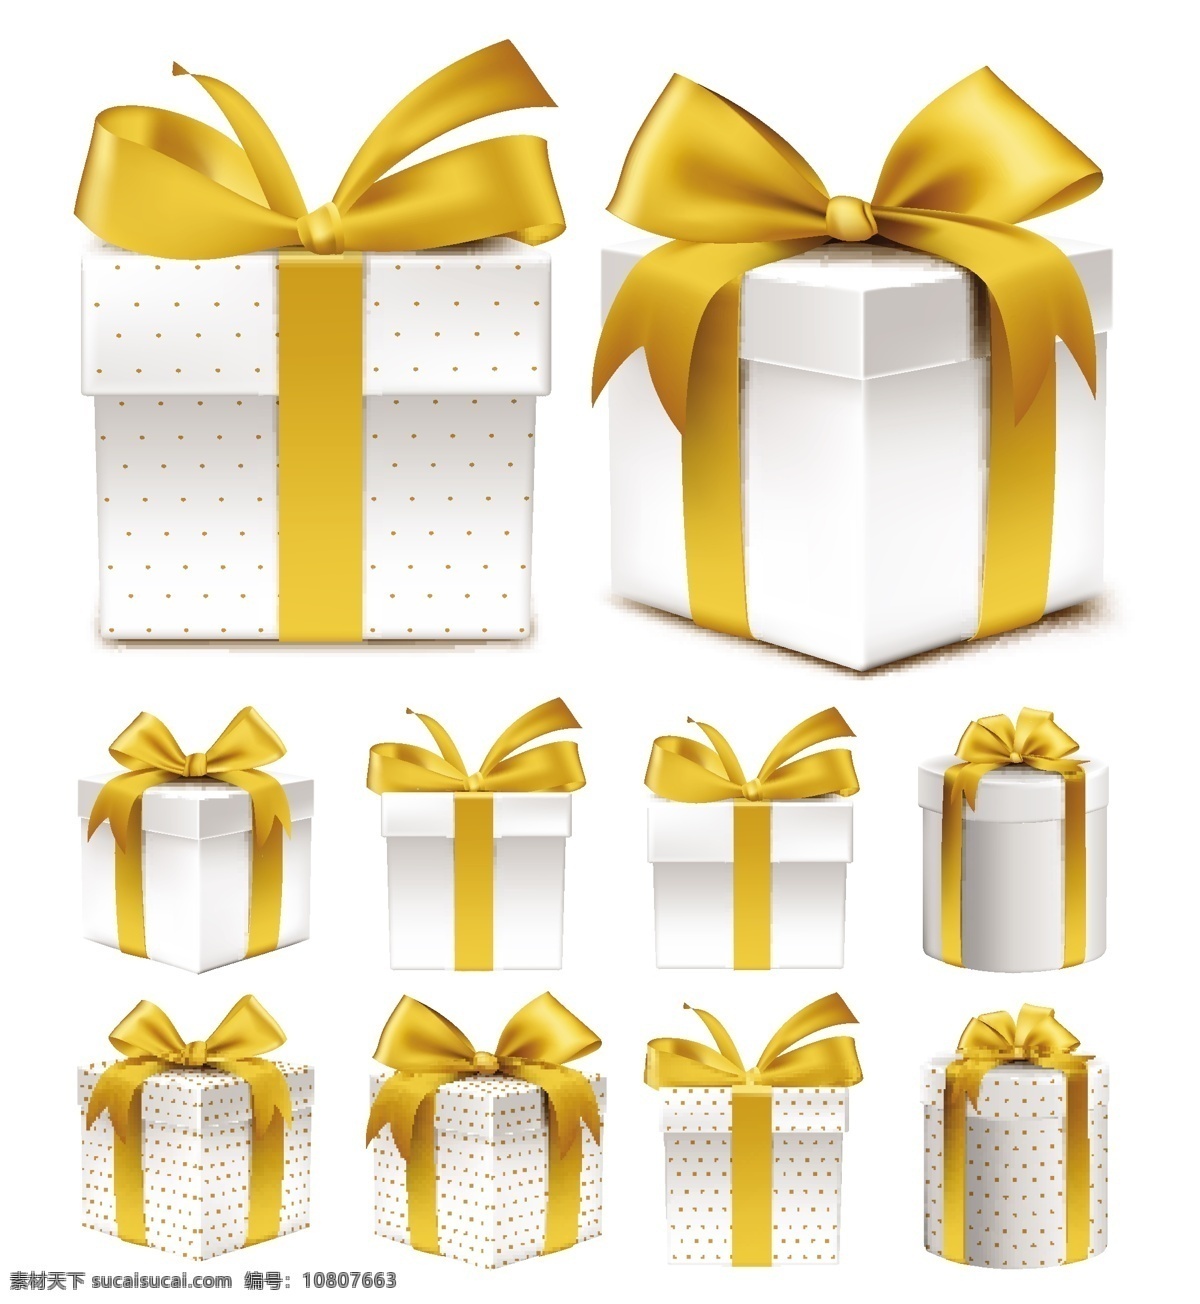 金色 礼物 包装盒 矢量 丝绸 绸缎 素材背景 装饰元素 源文件